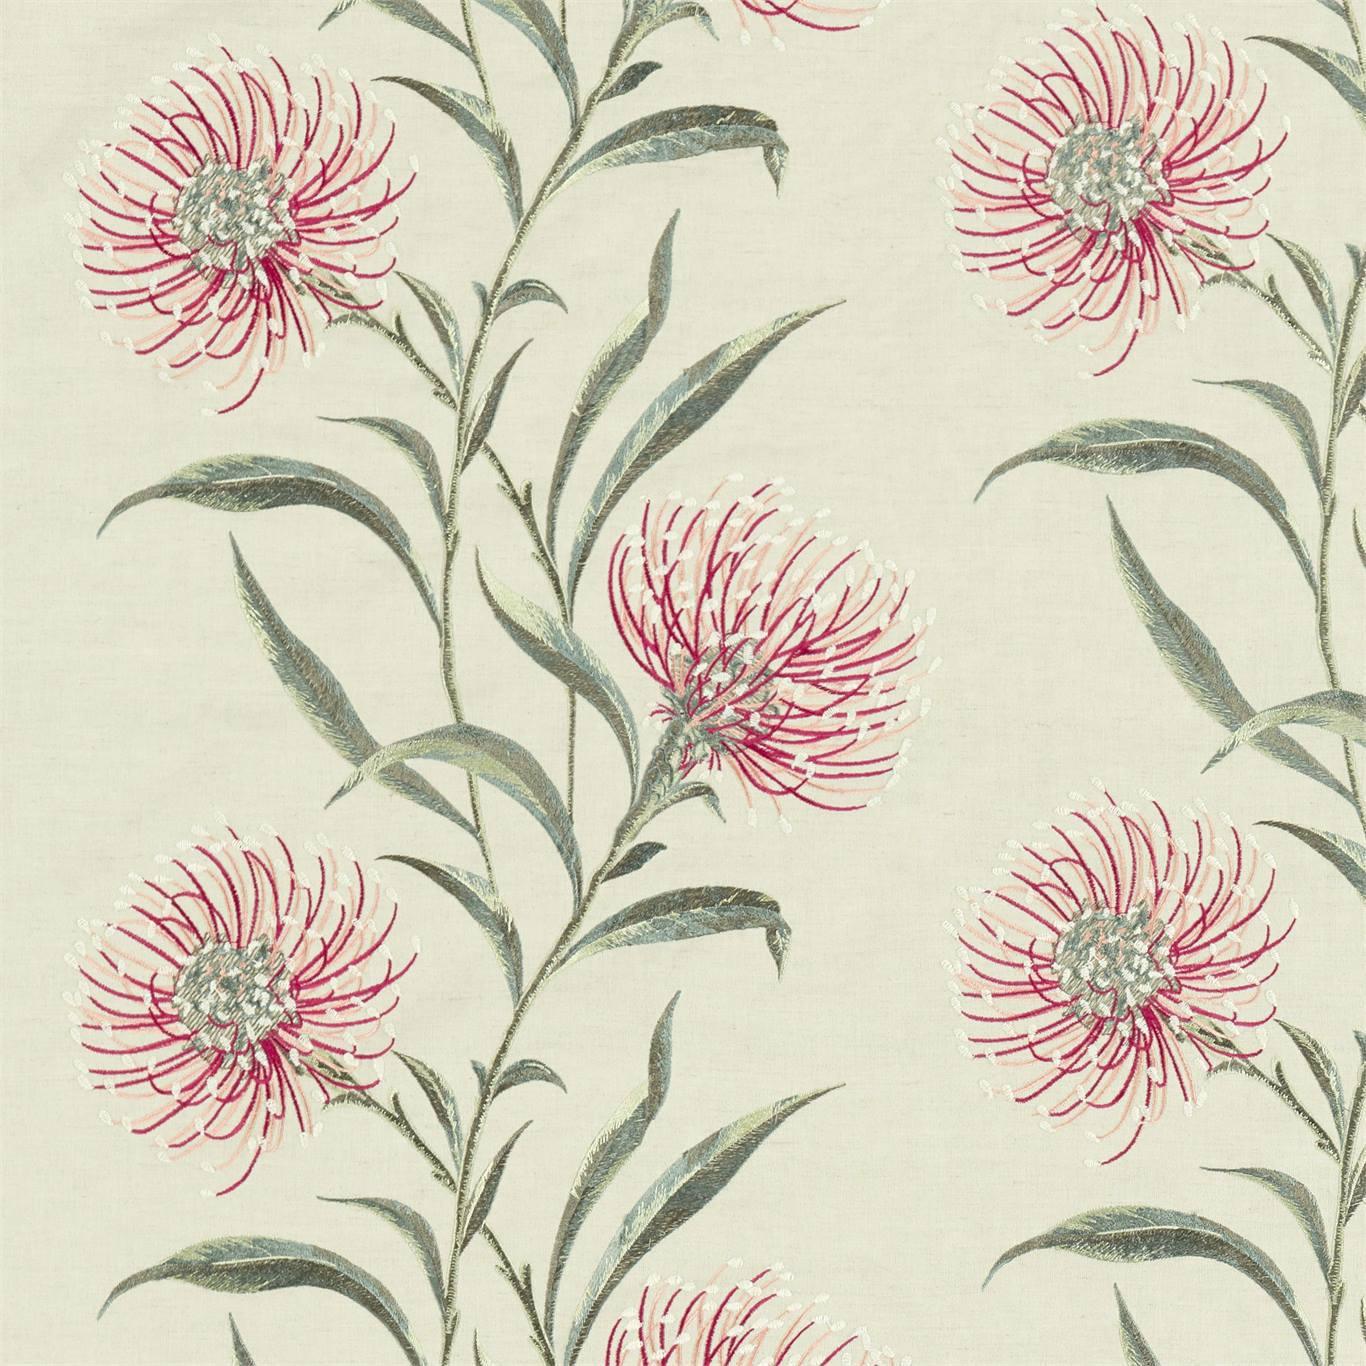 Tessuto Sanderson Catherinae Embroidery - Brand_Sanderson, Fantasia_Natura, Uso_Rivestimento cuscini, Uso_Tende - Tessuti - Sanderson